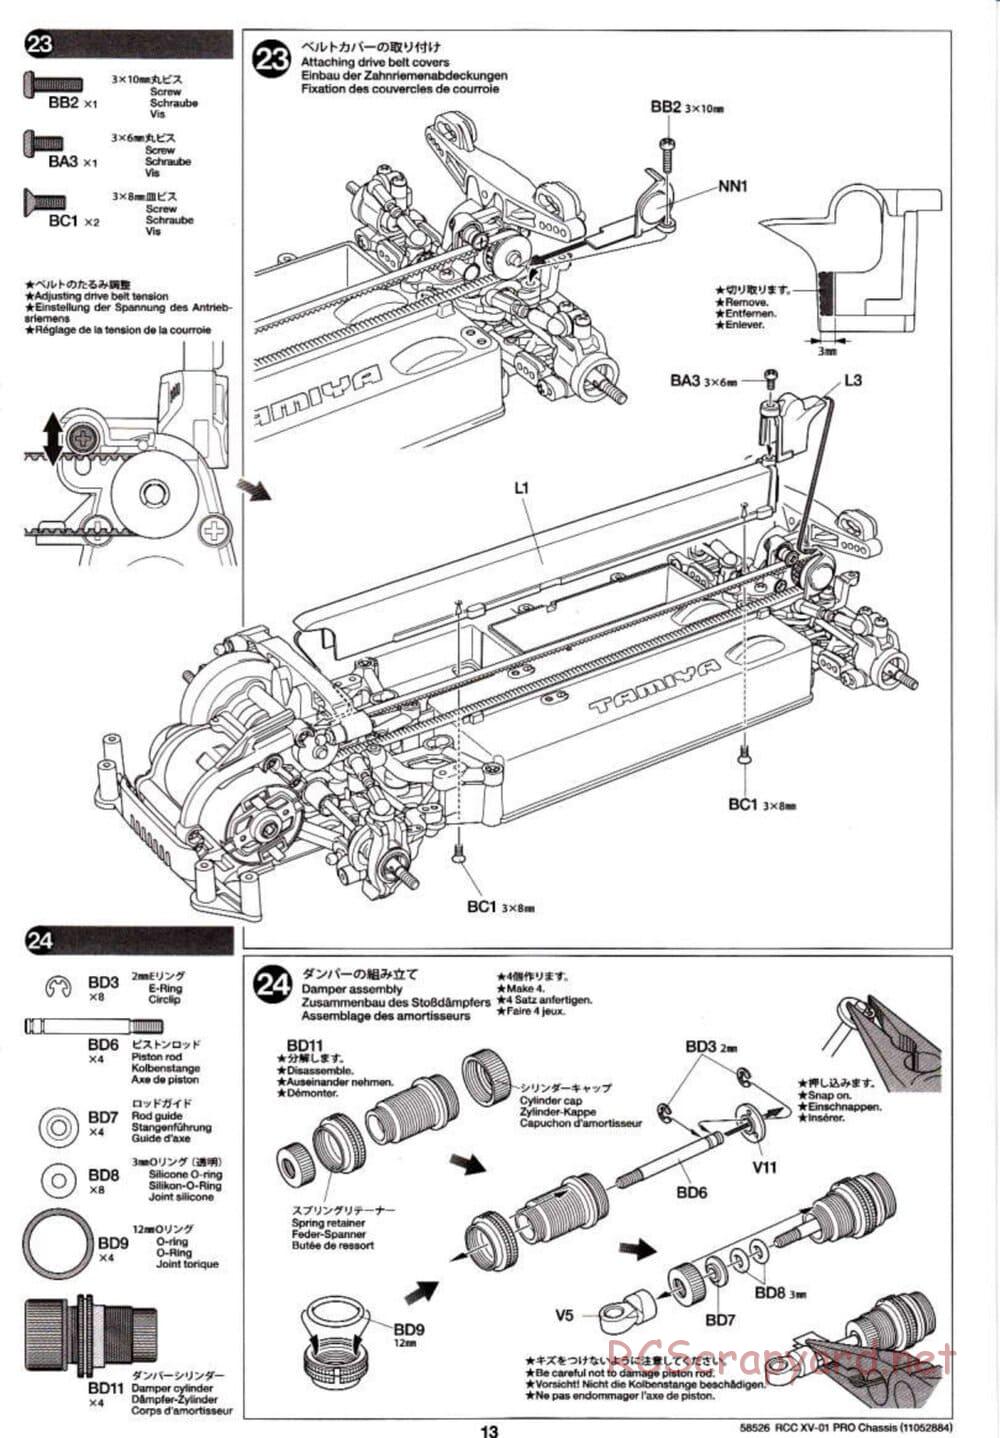 Tamiya - XV-01 PRO Chassis - Manual - Page 13